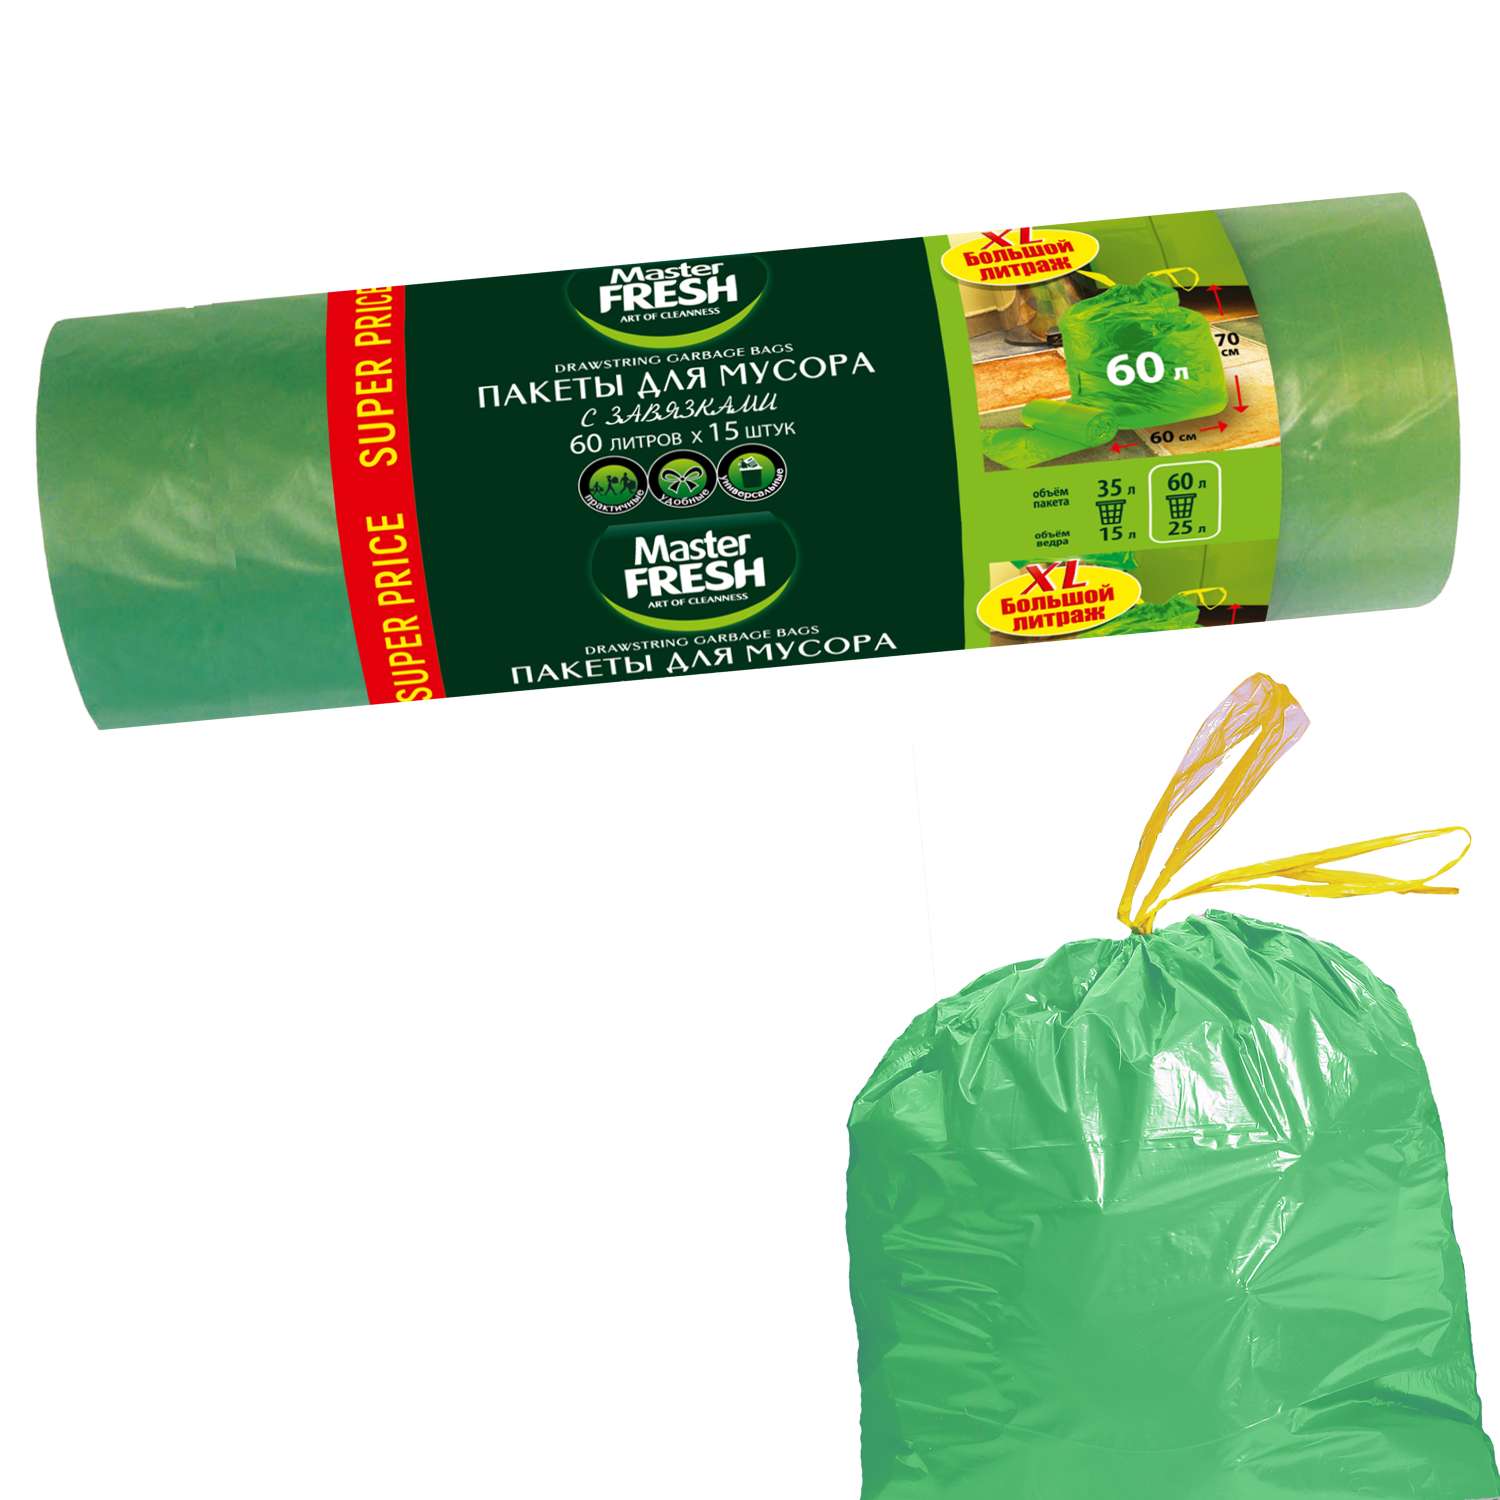 Пакеты для мусора Master fresh 60л 15шт Зеленые - фото 2